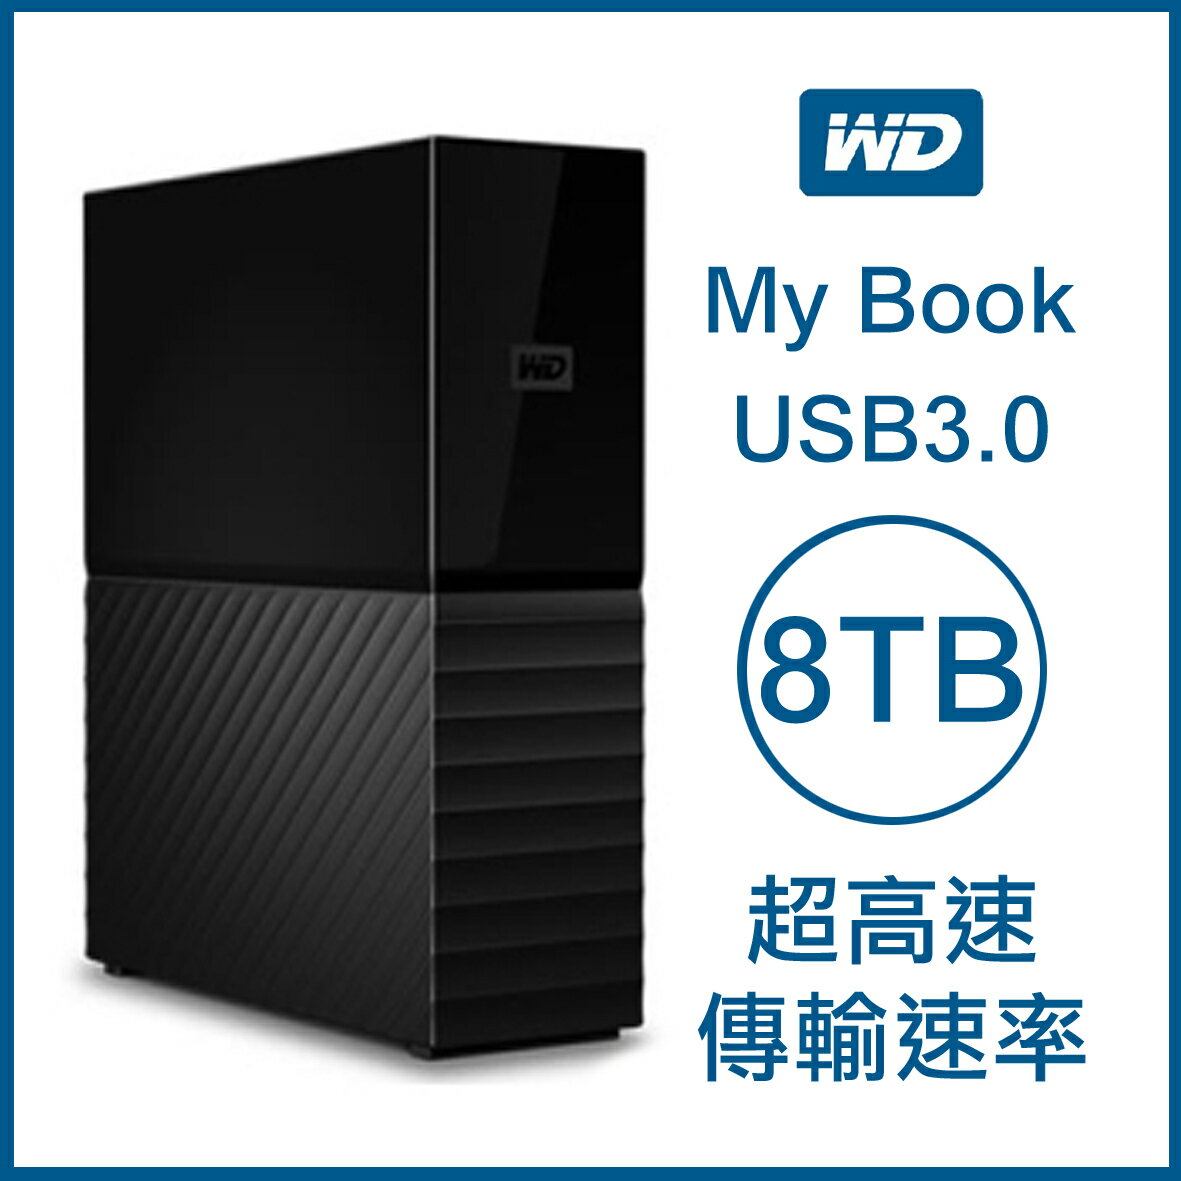 【最高22%點數】WD My Book 8TB 3.5吋外接硬碟 USB3.0 超高速傳輸速率 原廠公司貨 原廠保固 威騰 8T【限定樂天APP下單】